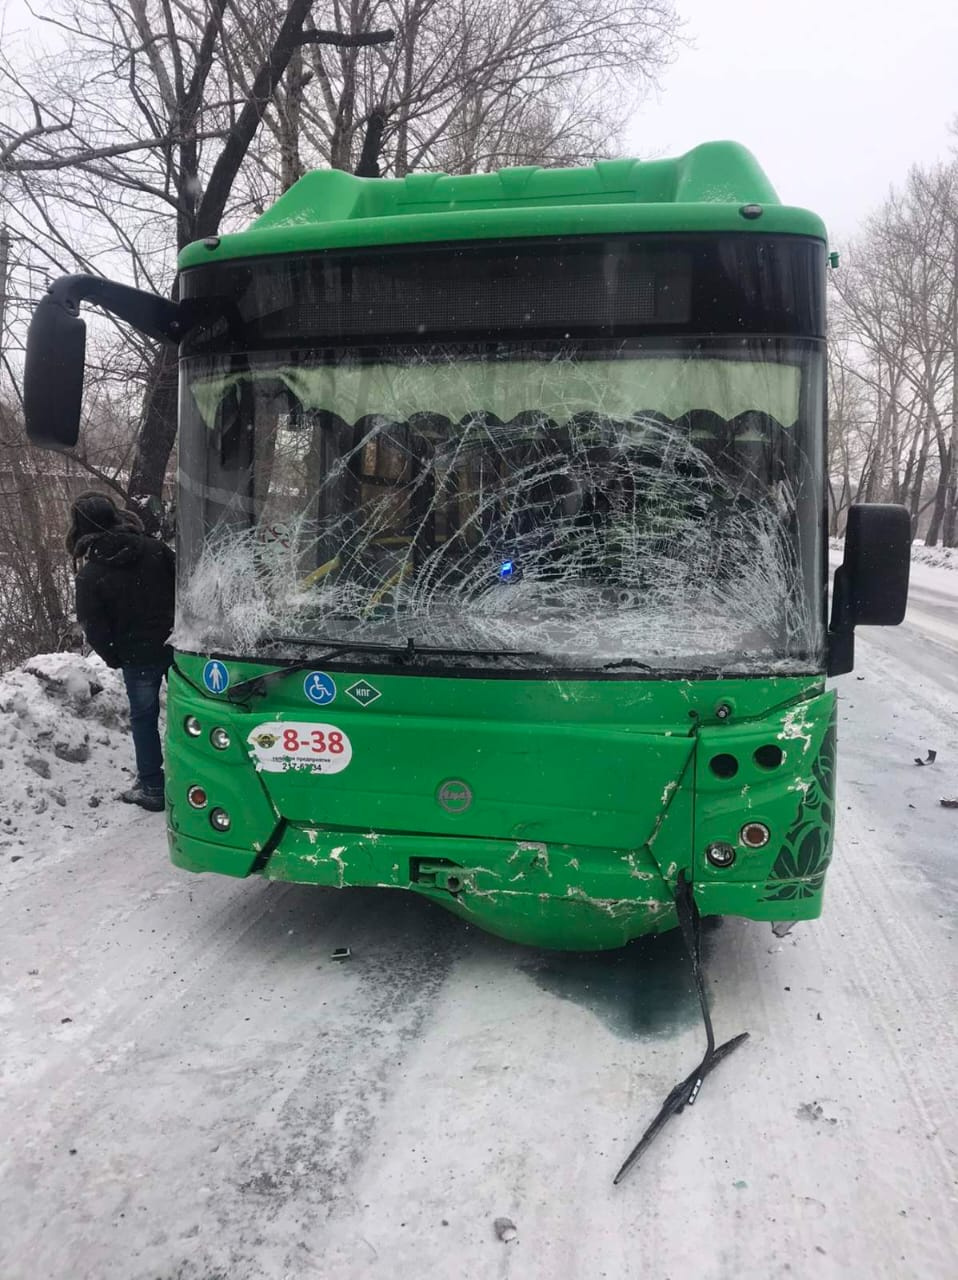 Лобовое стекло автобуса разбито, но водитель и пассажиры не пострадали